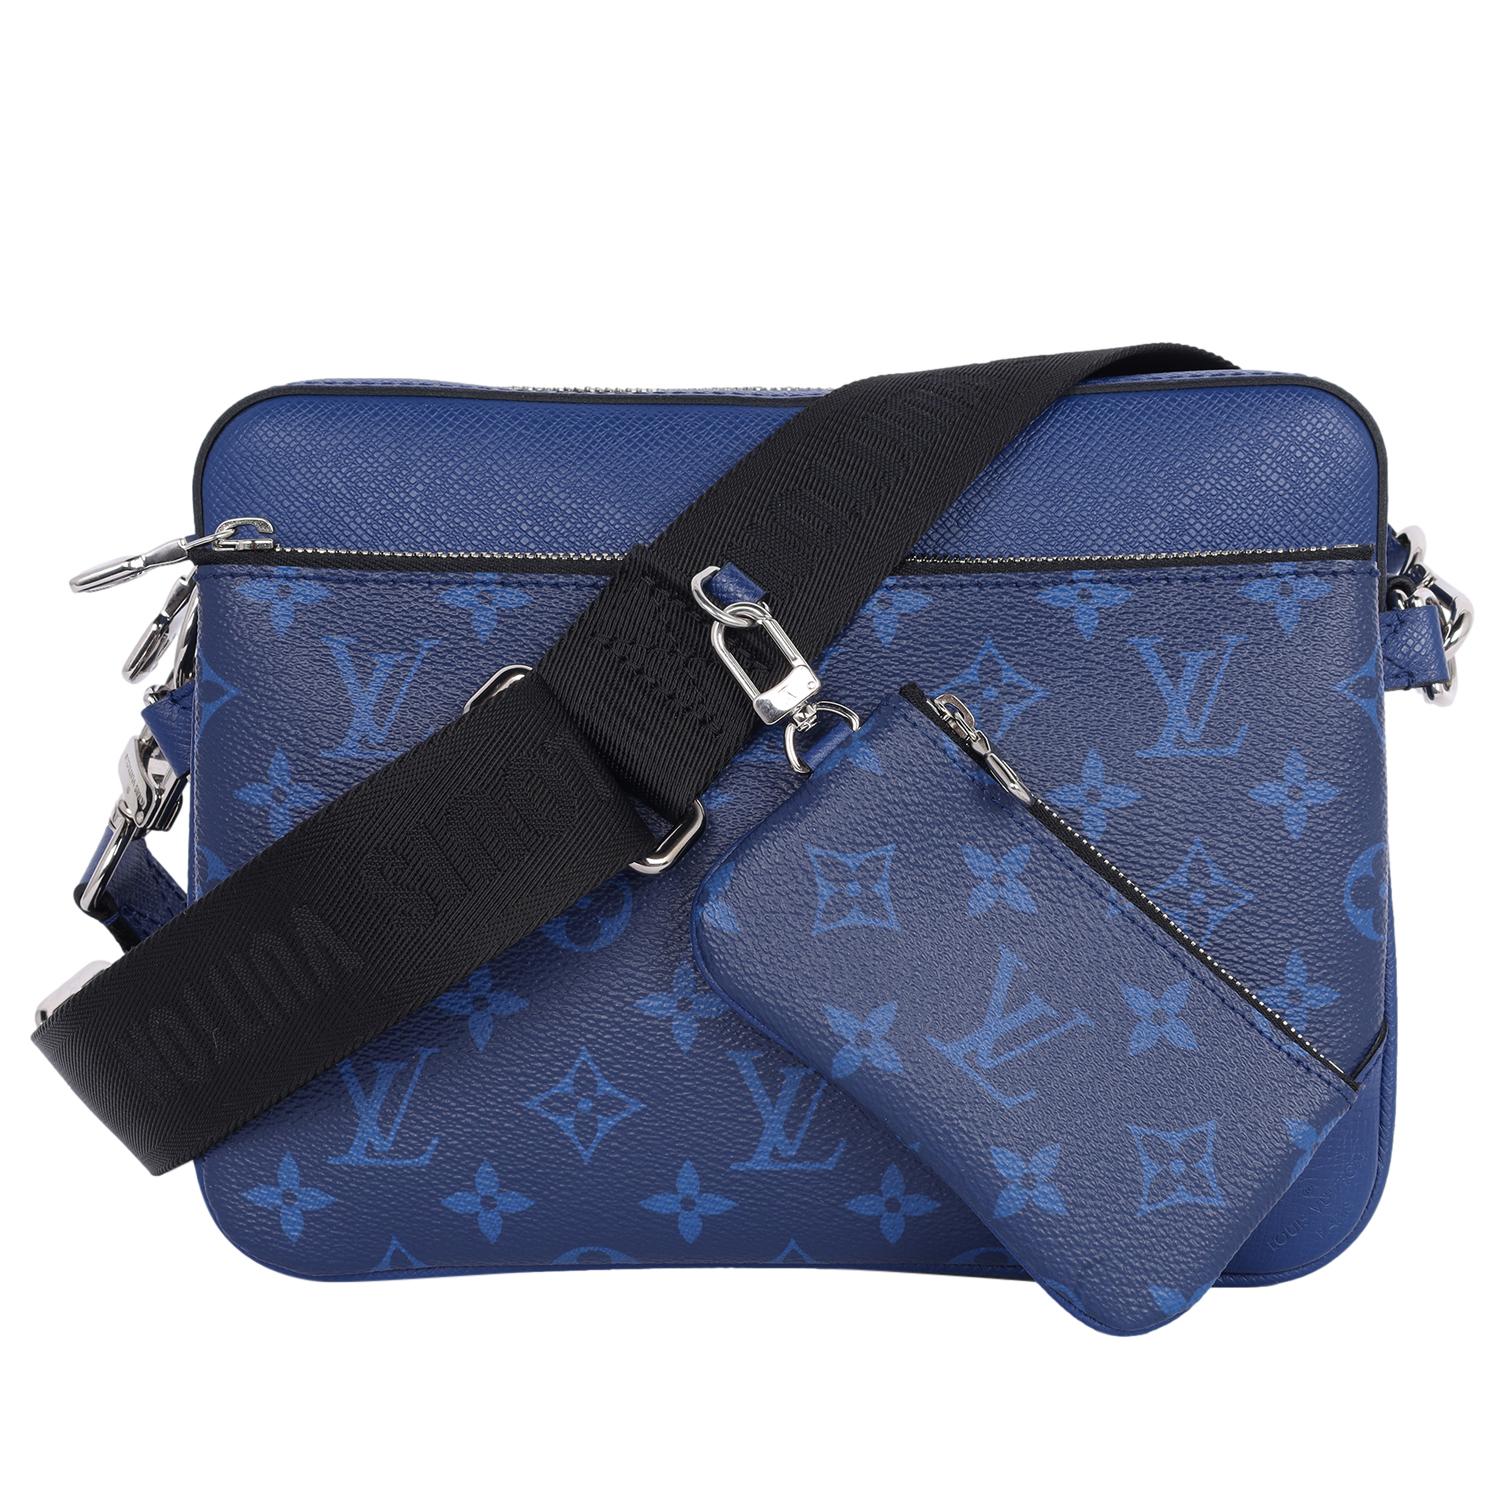 Authentische, gebrauchte Louis Vuitton Trio Messenger Bag in kobaltblau. Die Tasche im Messenger-Crossbody-Stil besteht aus dunkelblauem, mit Monogrammen beschichtetem Canvas. Dieses Set besteht aus drei Teilen. Es gibt 2 abnehmbare